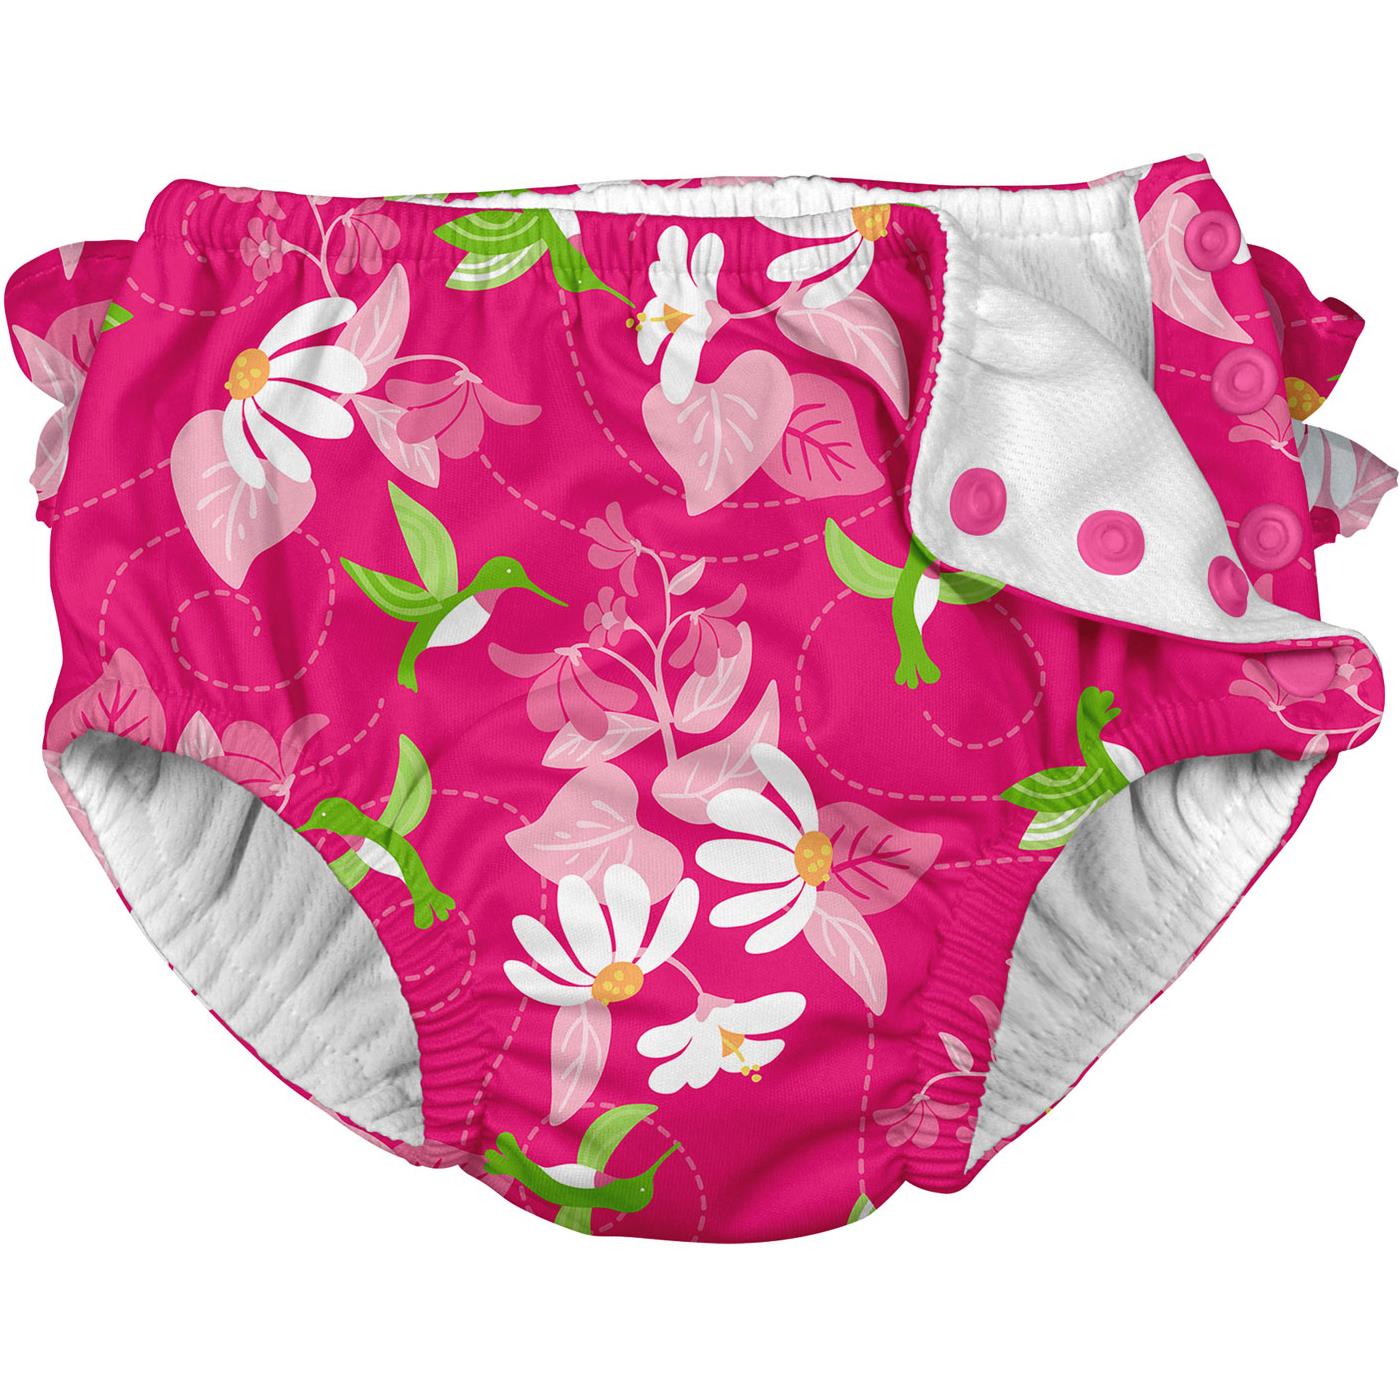 Iplay Girls Ruffle Snap Reusable Swim Diaper –